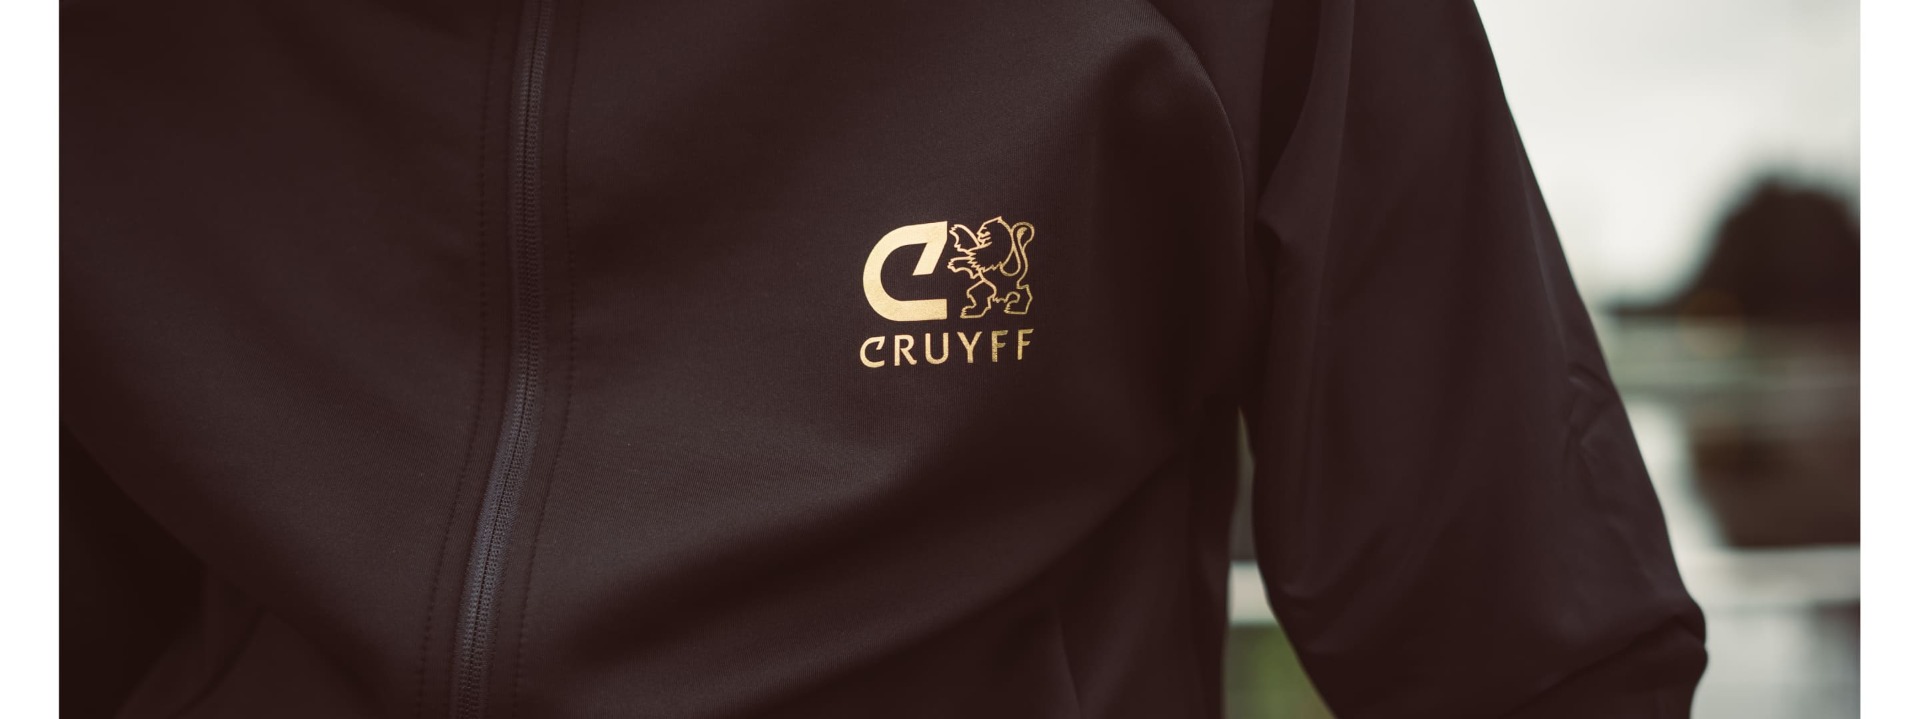 20210908-slider-header-Cruyff-collectie-5.jpg